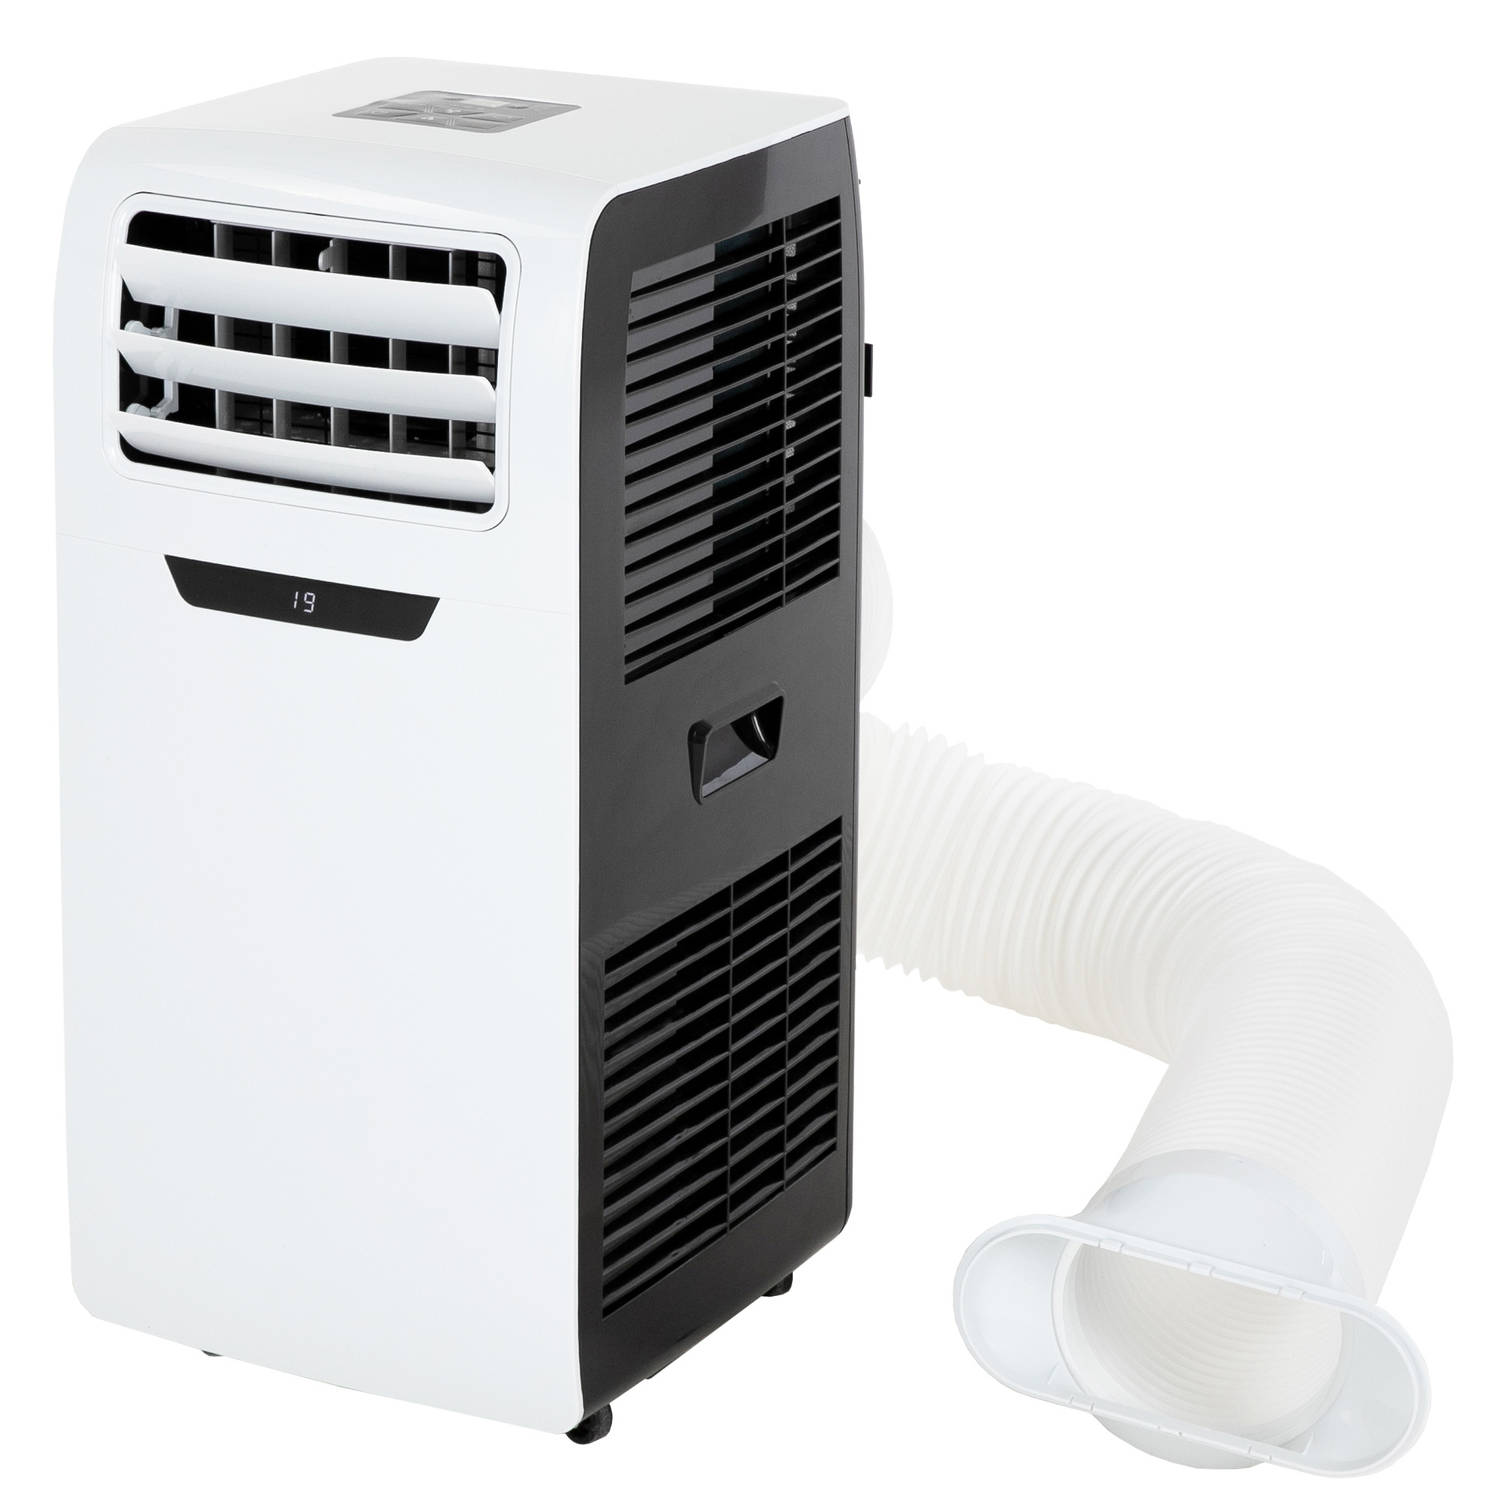 Mobiele Airconditioner 3in1, 2600w, Met Digitale Display En Afstandsbediening